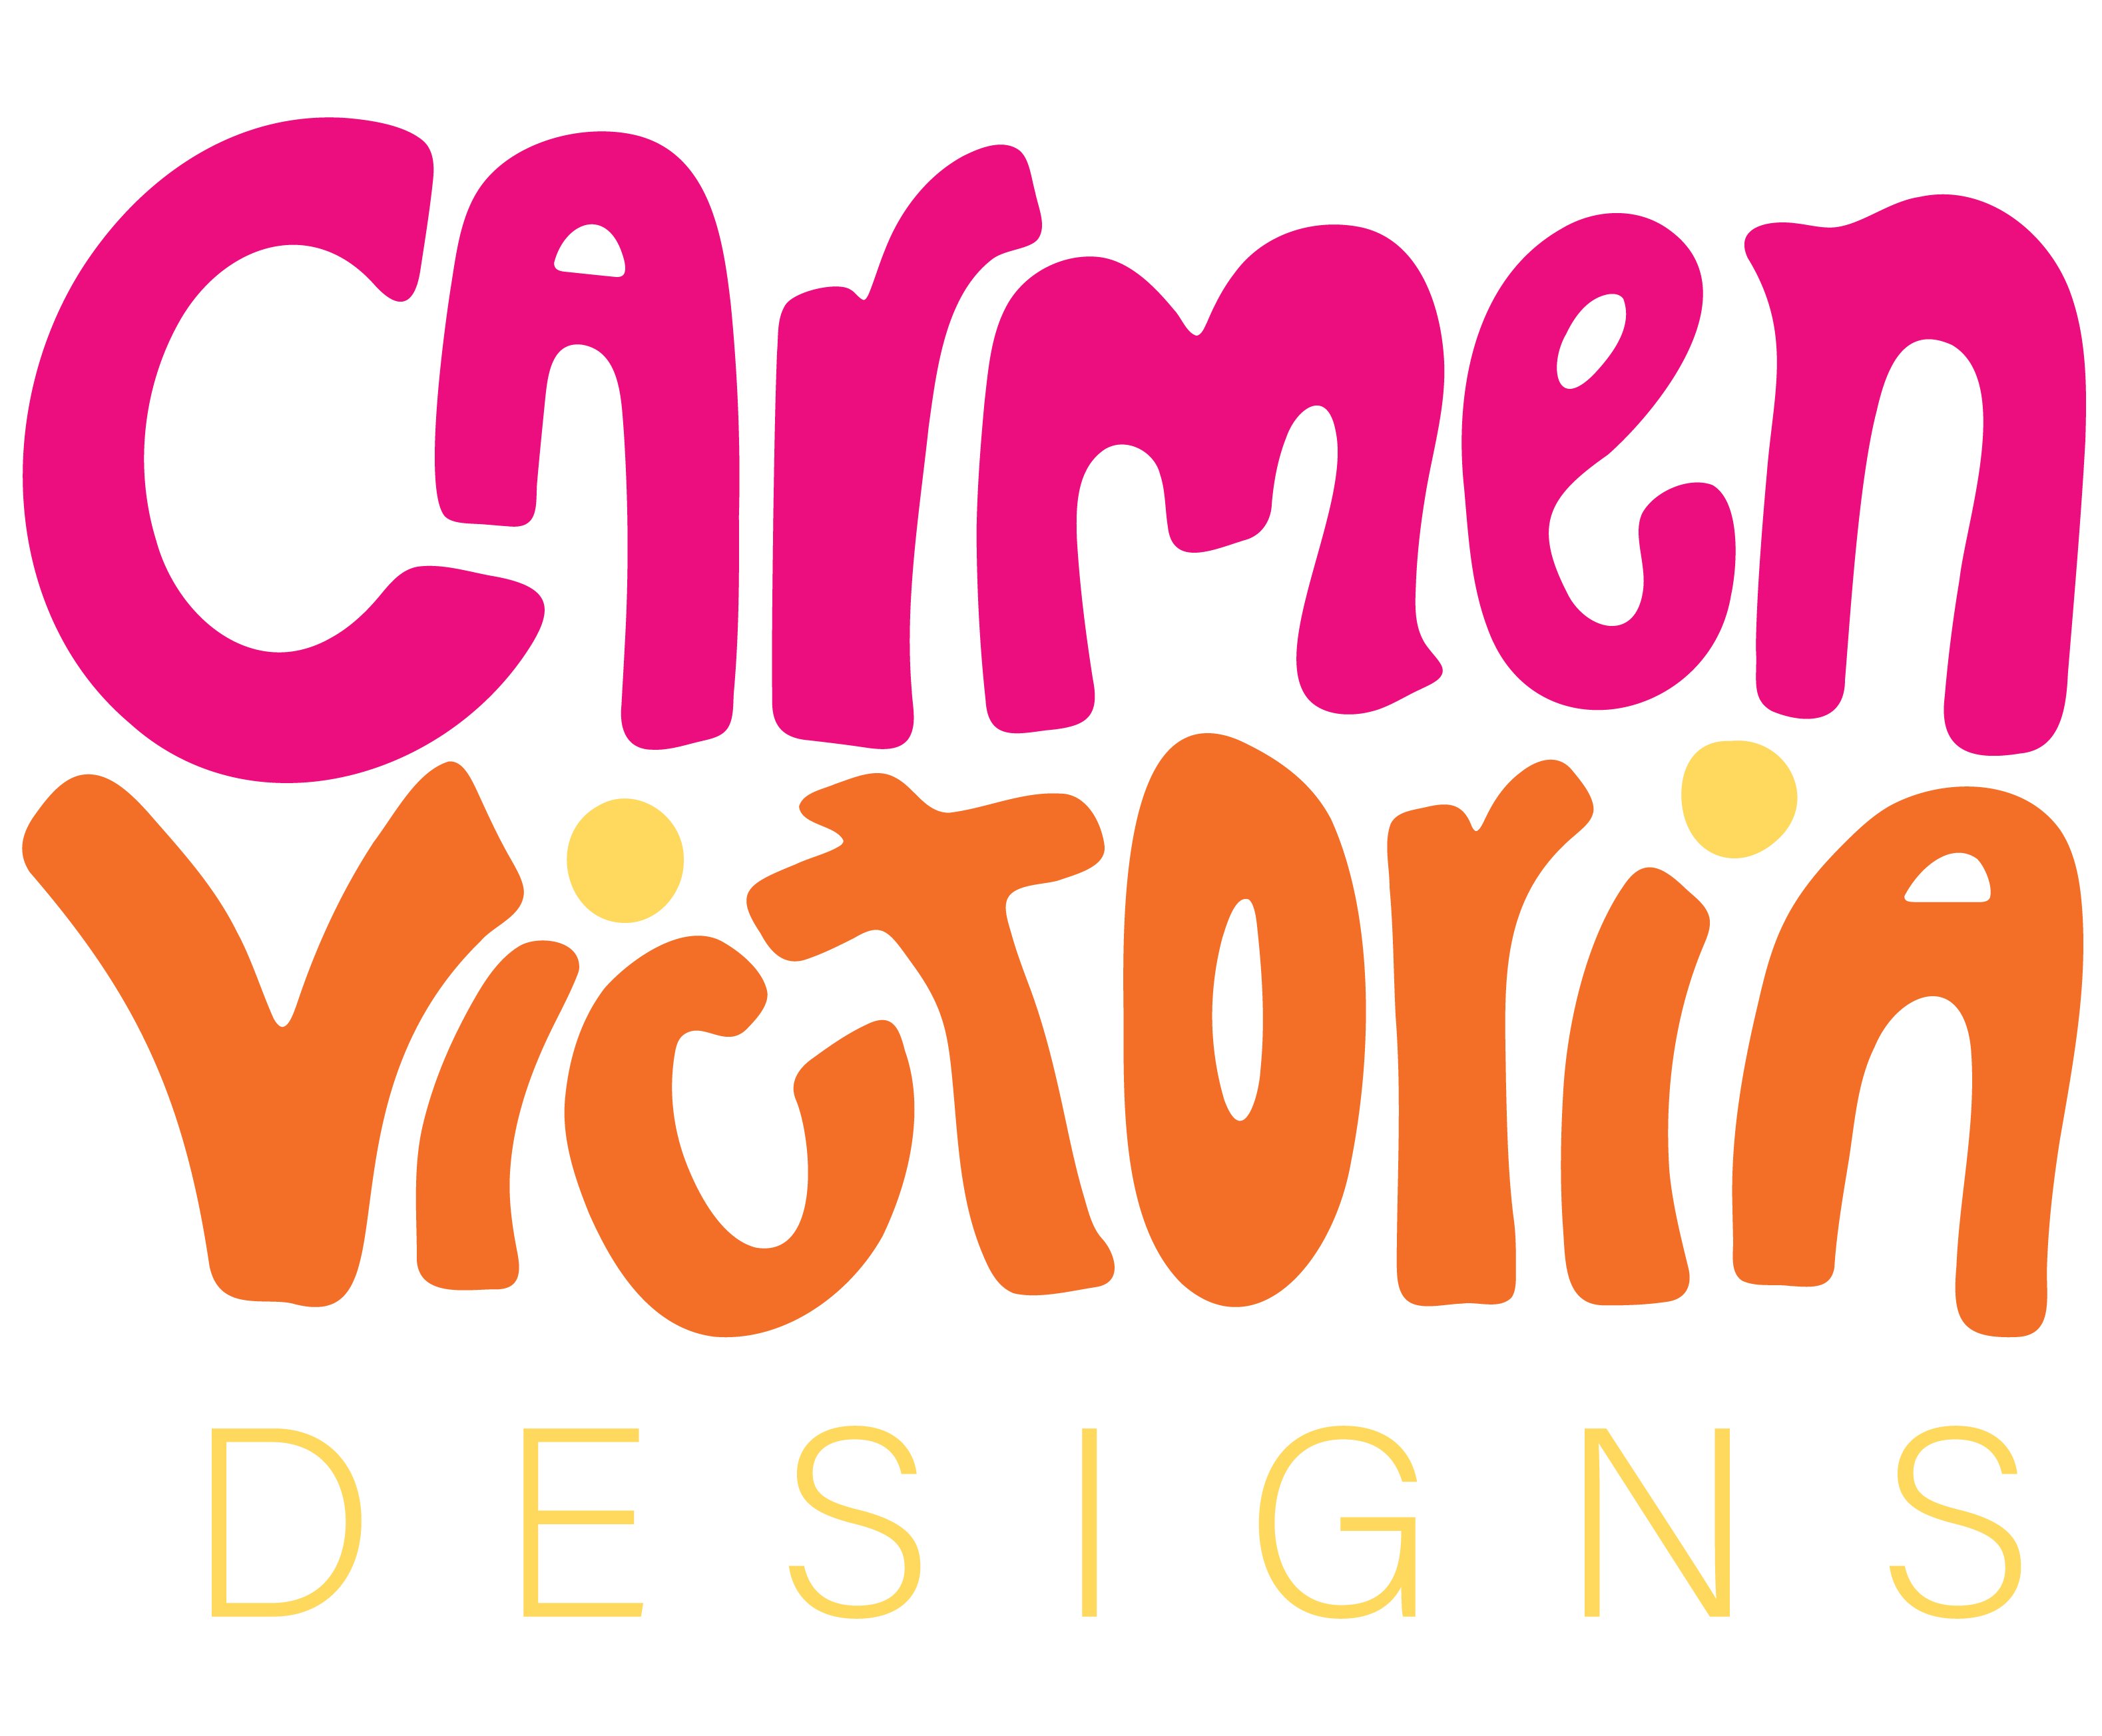 Carmen Victoria Designs